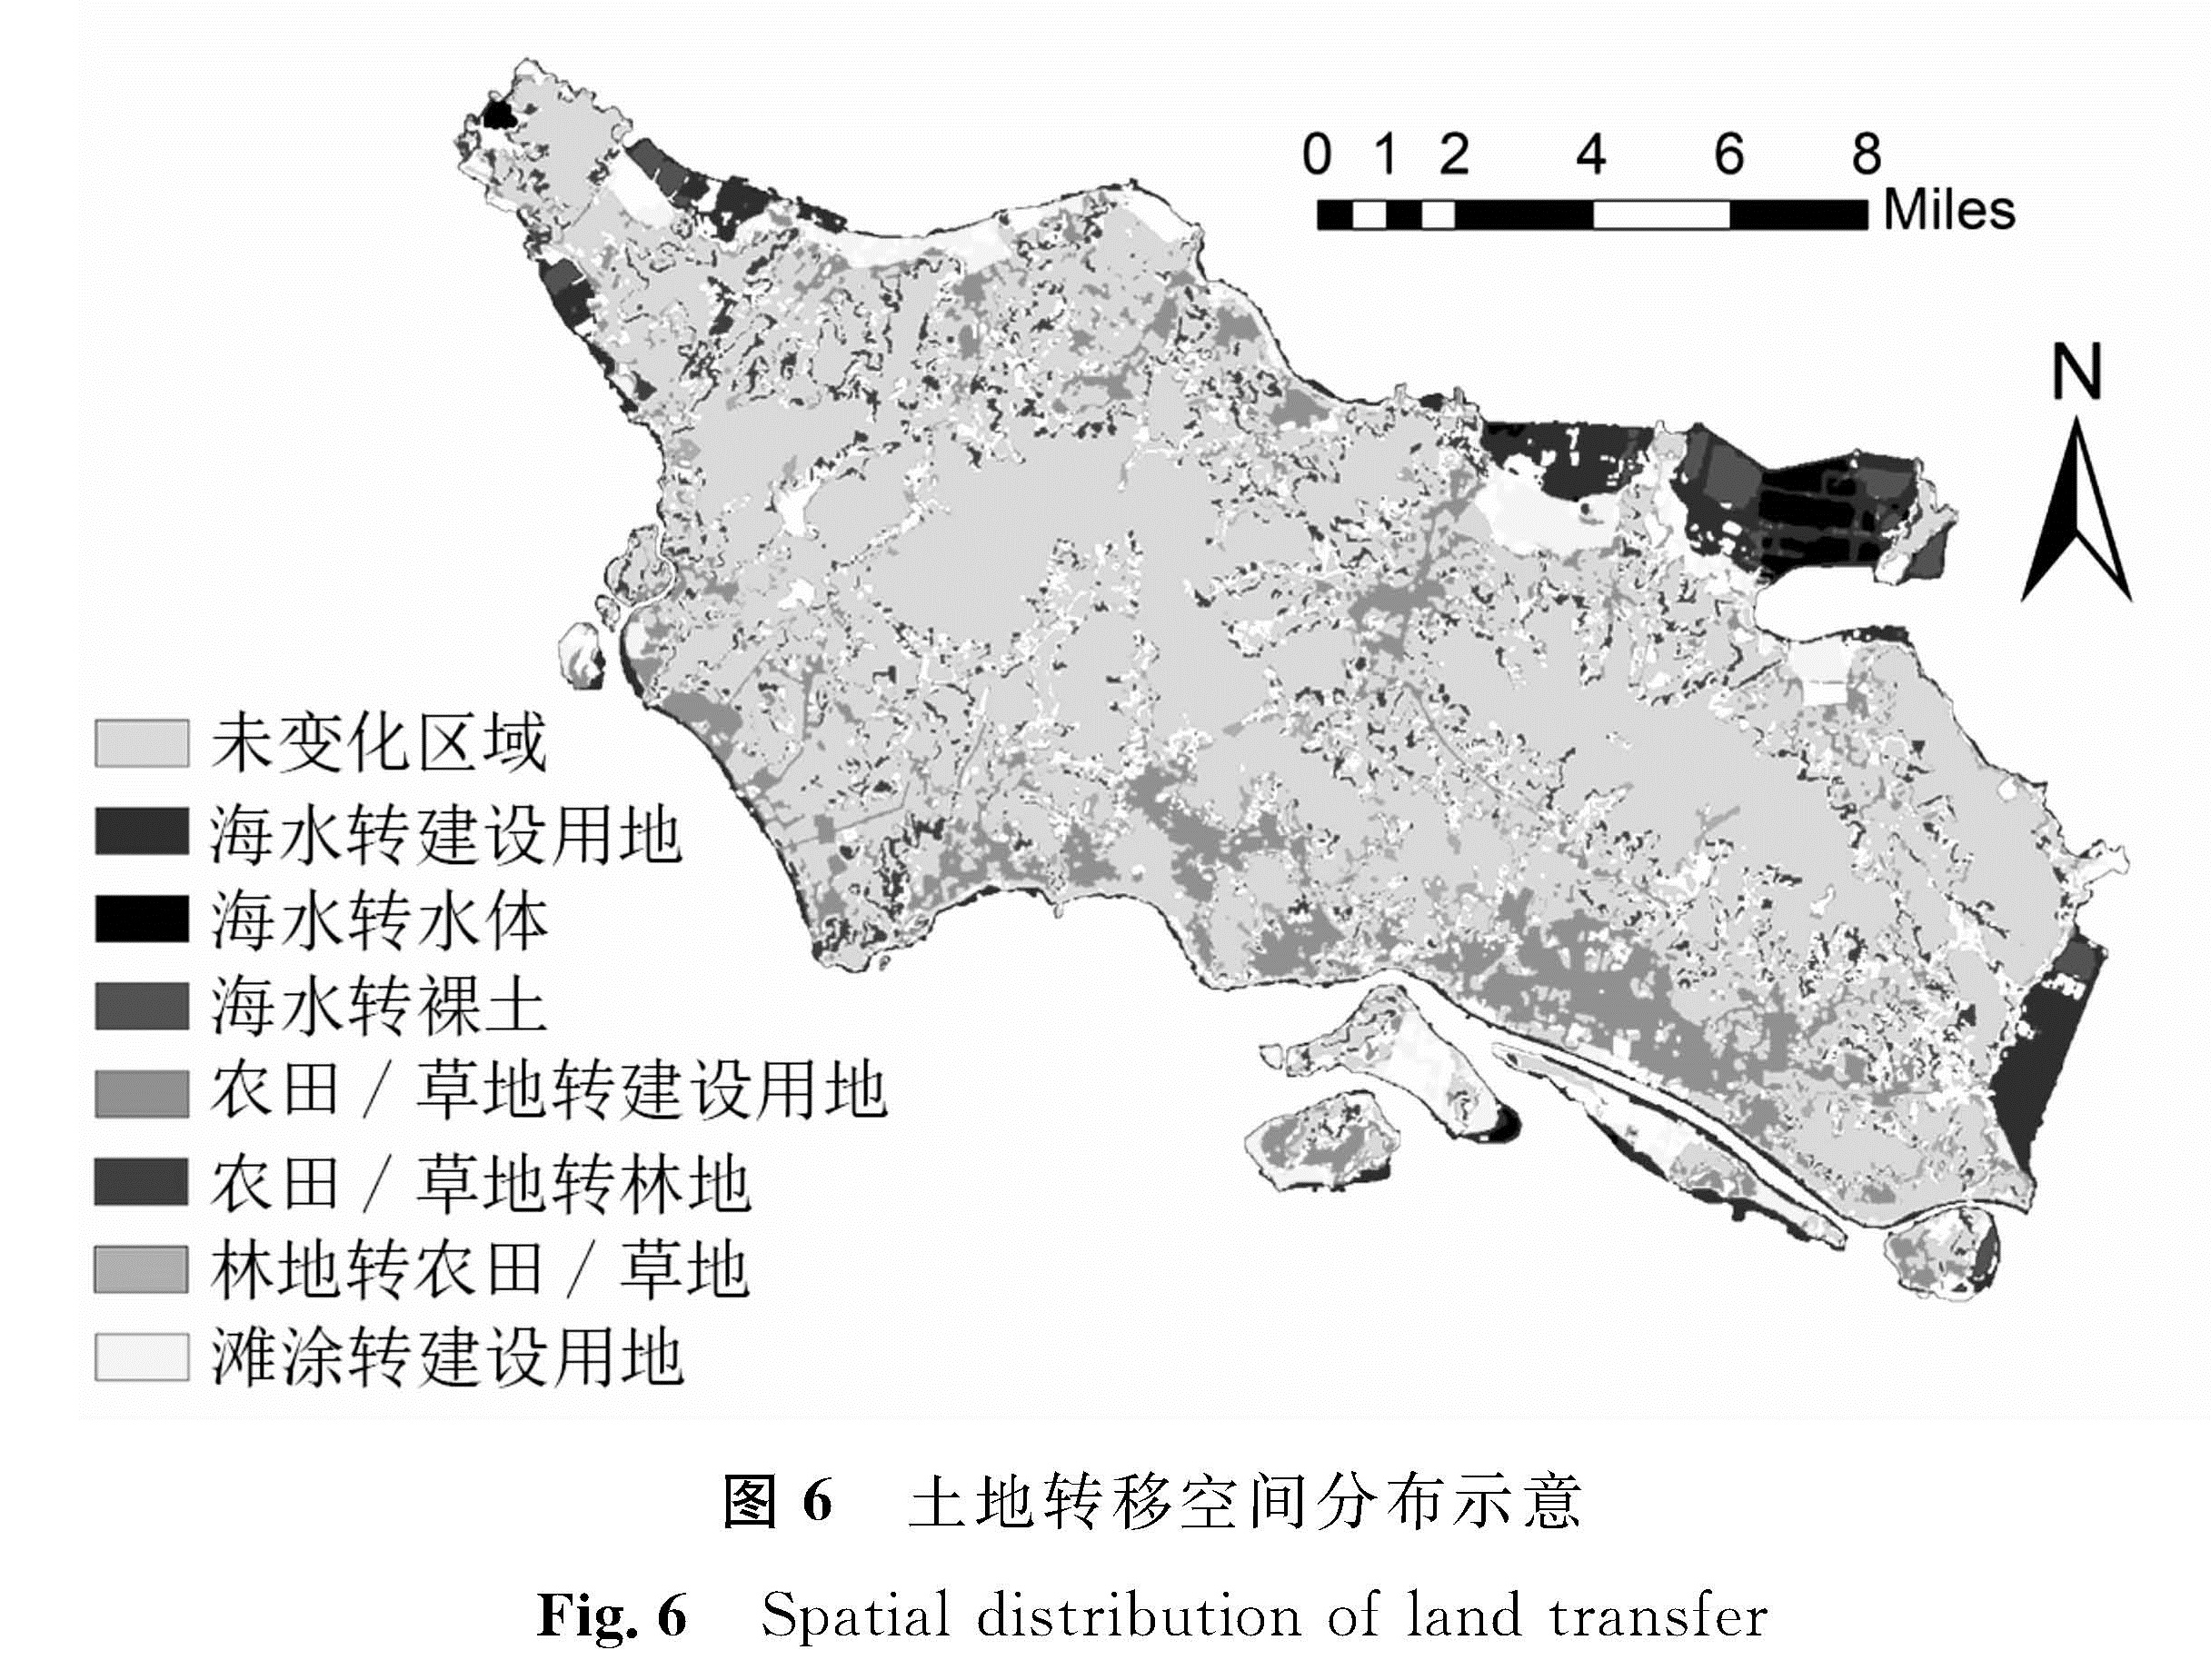 图6 土地转移空间分布示意<br/>Fig.6 Spatial distribution of land transfer